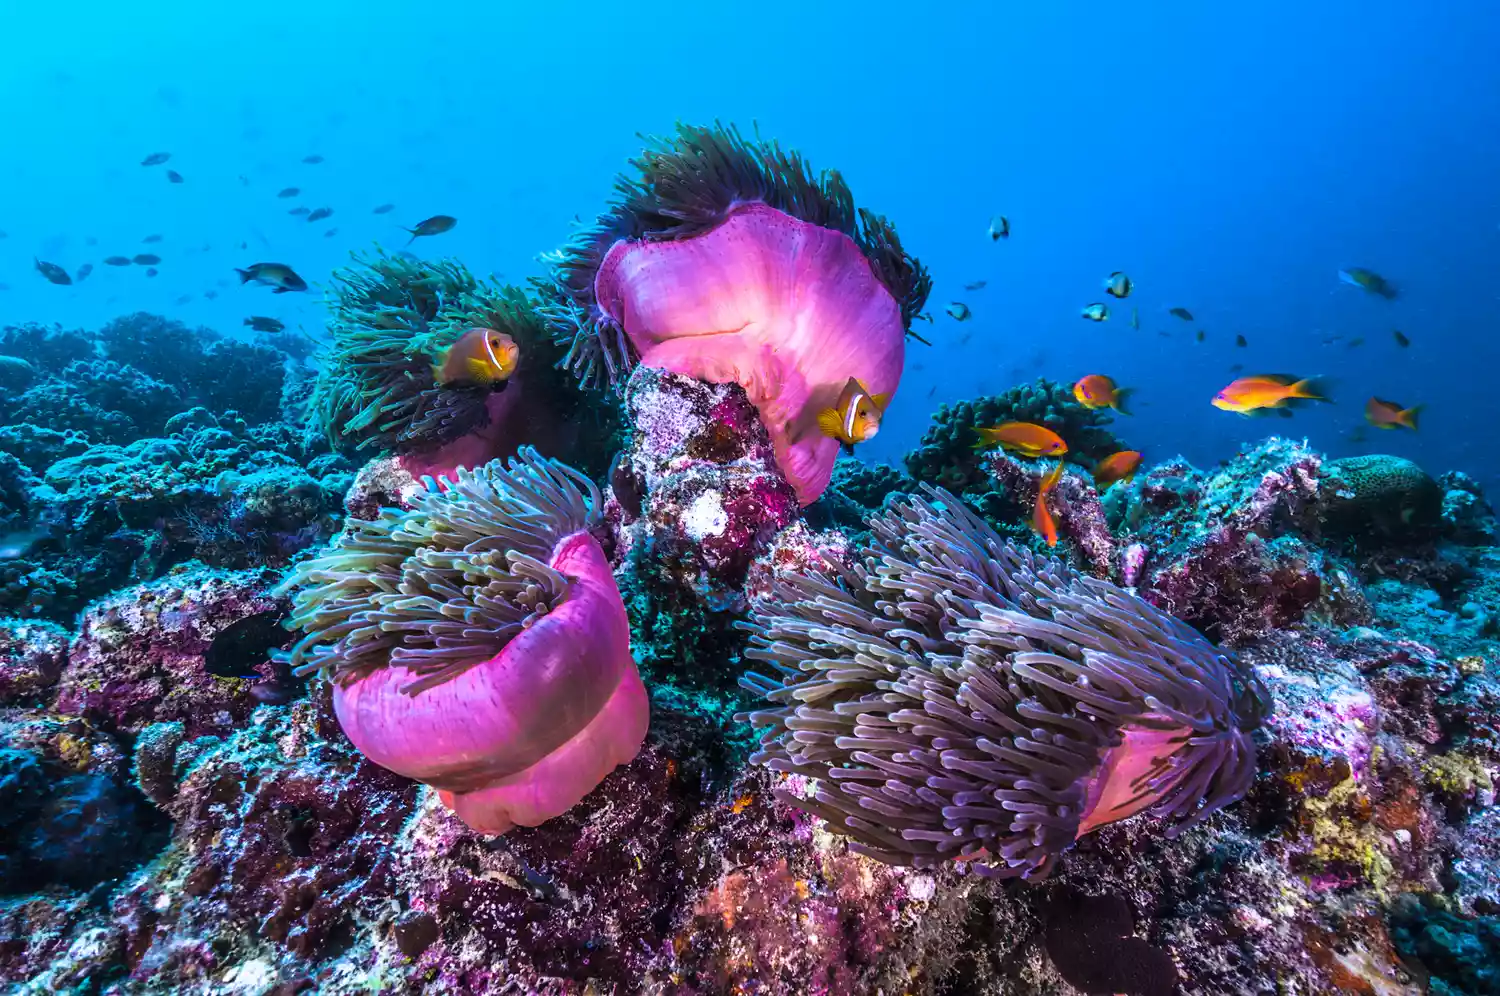 Рыба-клоун плавает вокруг разноцветных кораллов в голубой воде